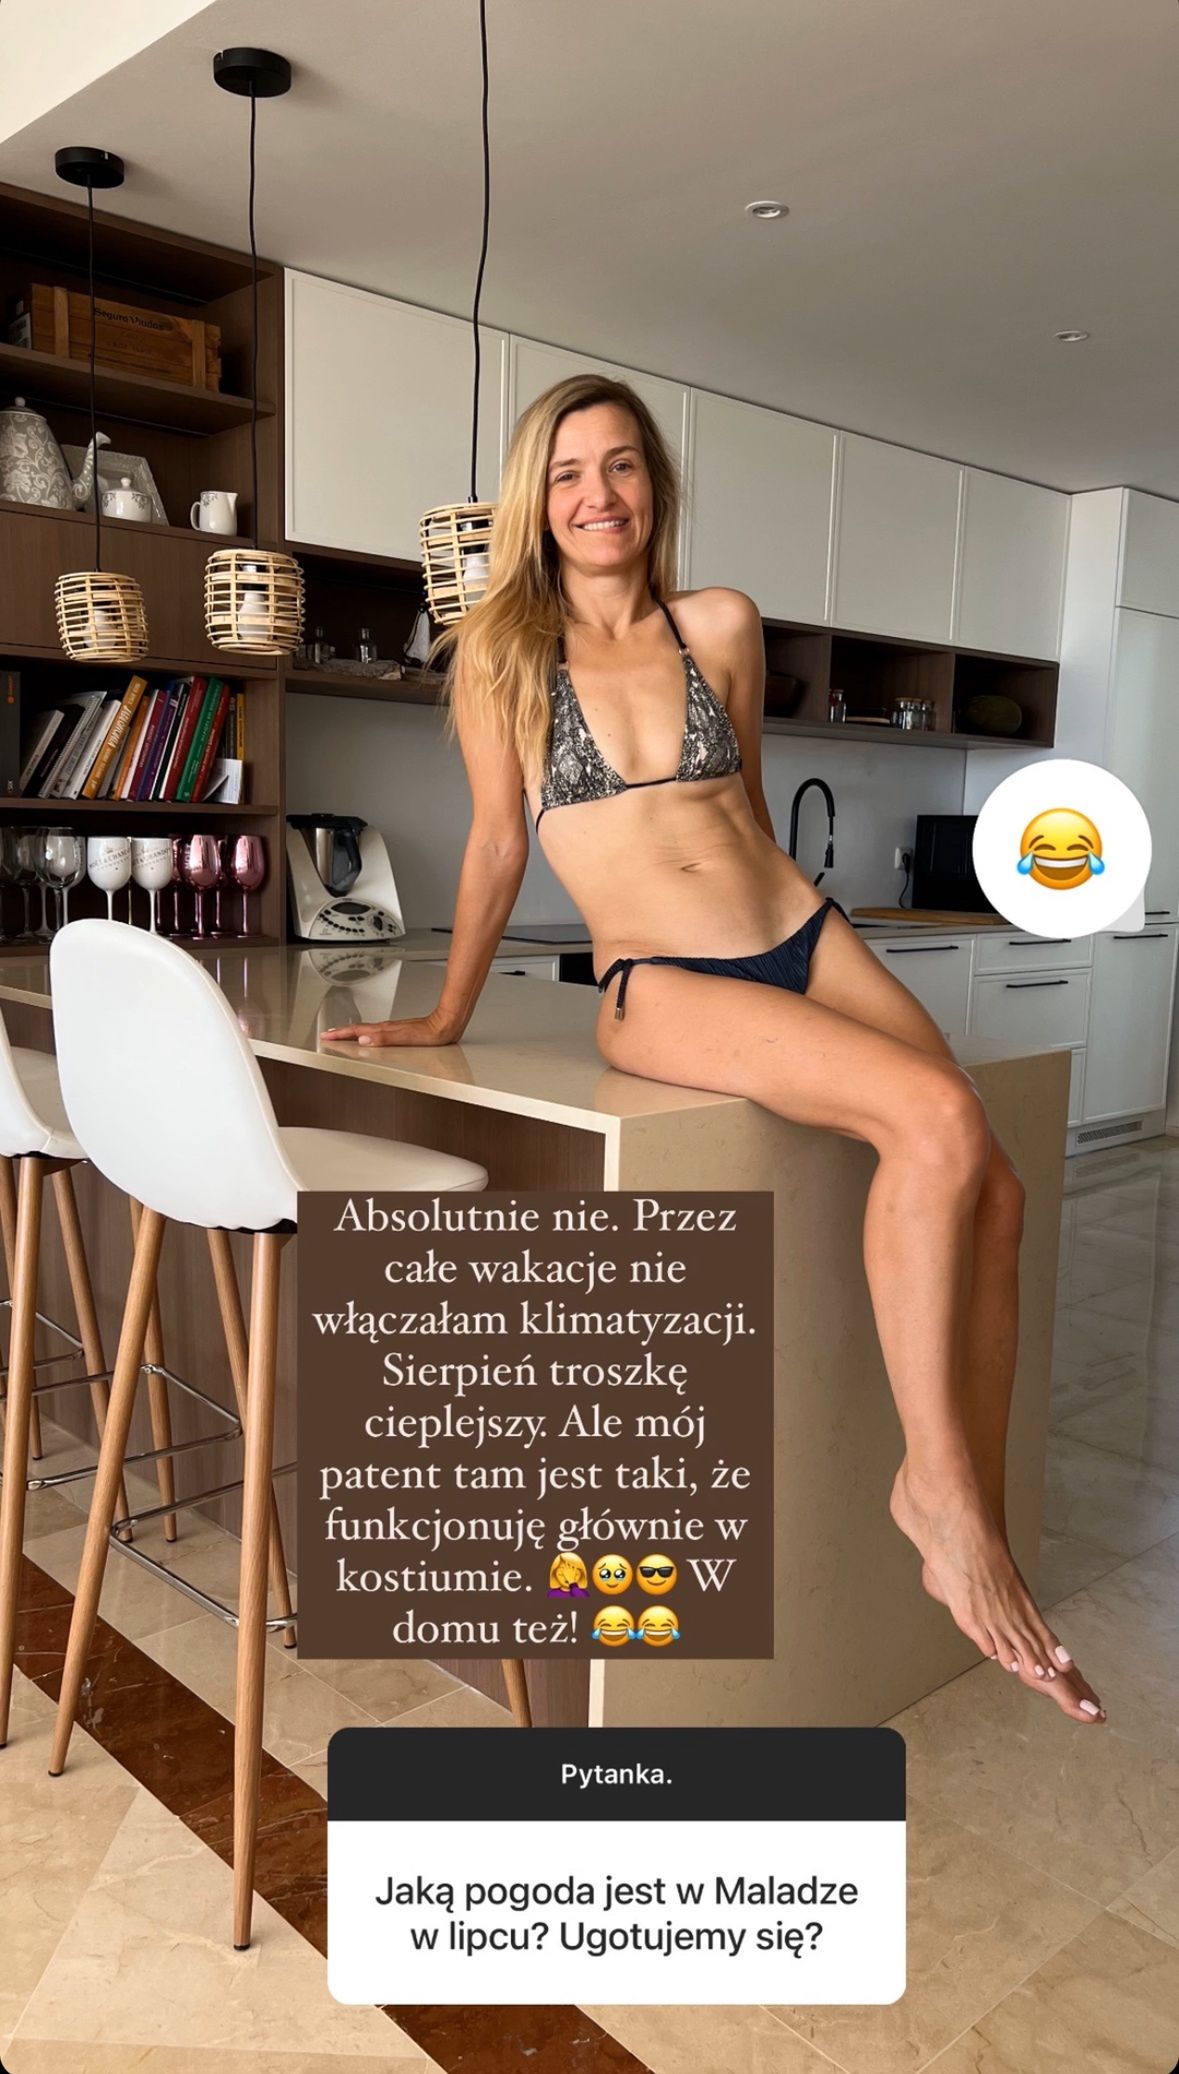 joanna koroniewska w skąpym bikini prawi o pogodzie w hiszpanii. podgrzała atmosferę? (foto)